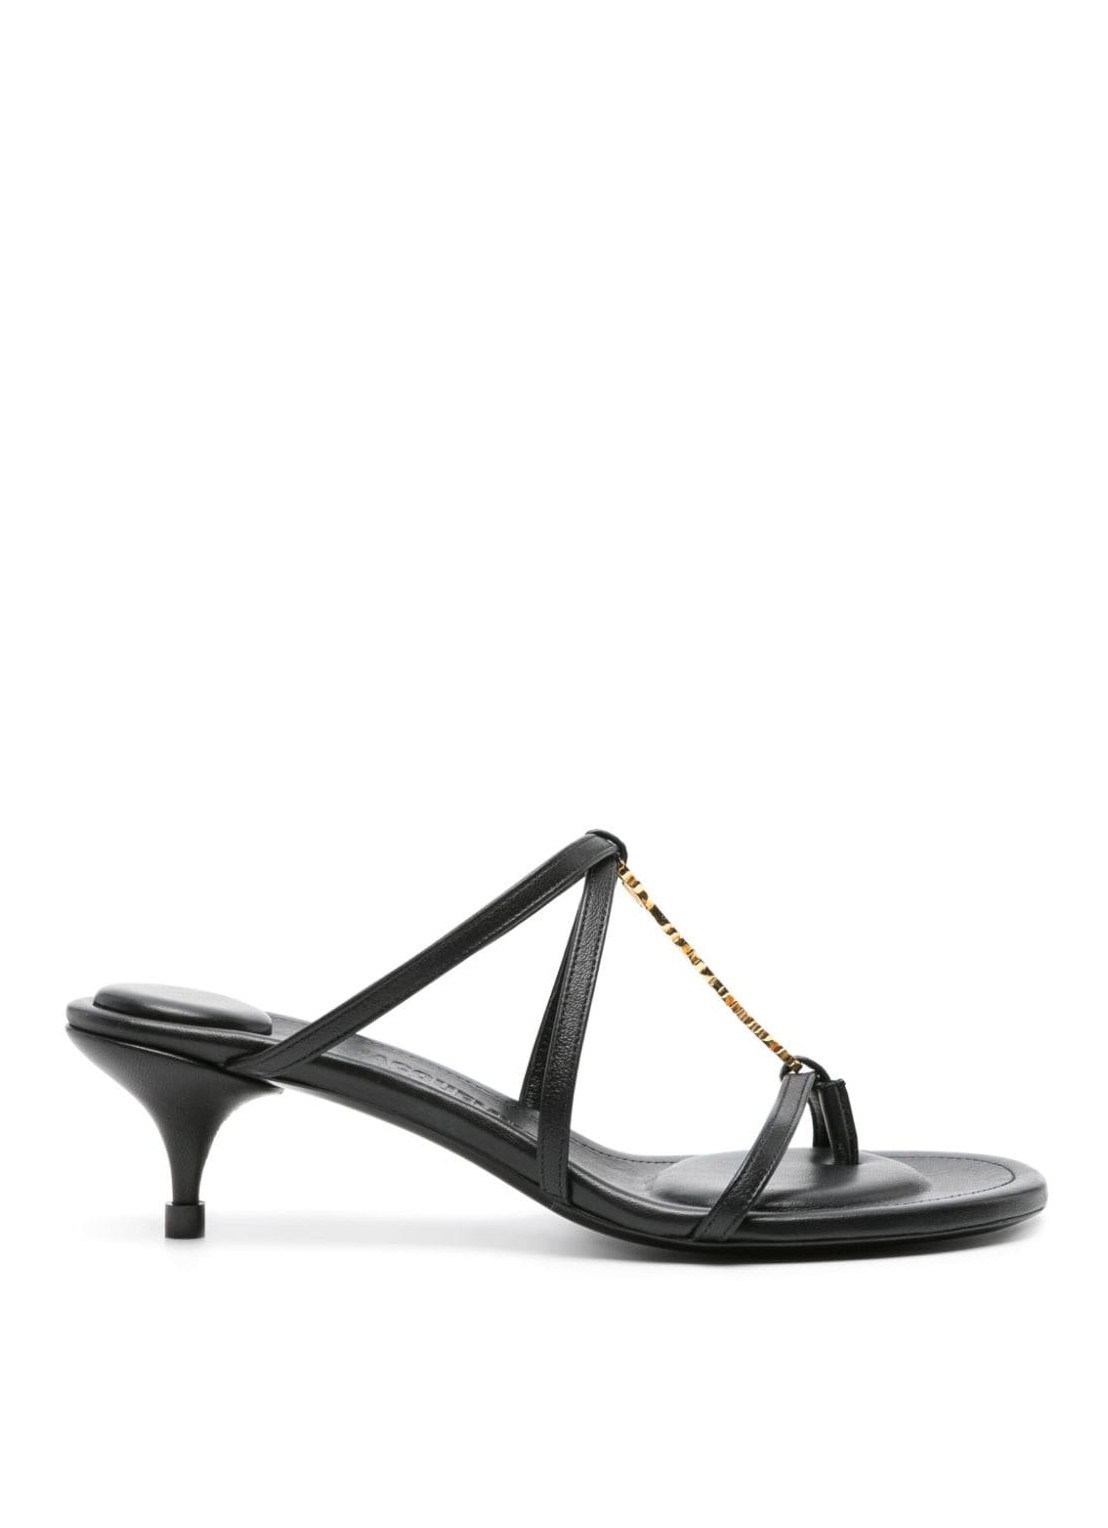 Sandalia jacquemus sandal woman les sandales pralu b 24e241fo0834303 990 talla negro
 